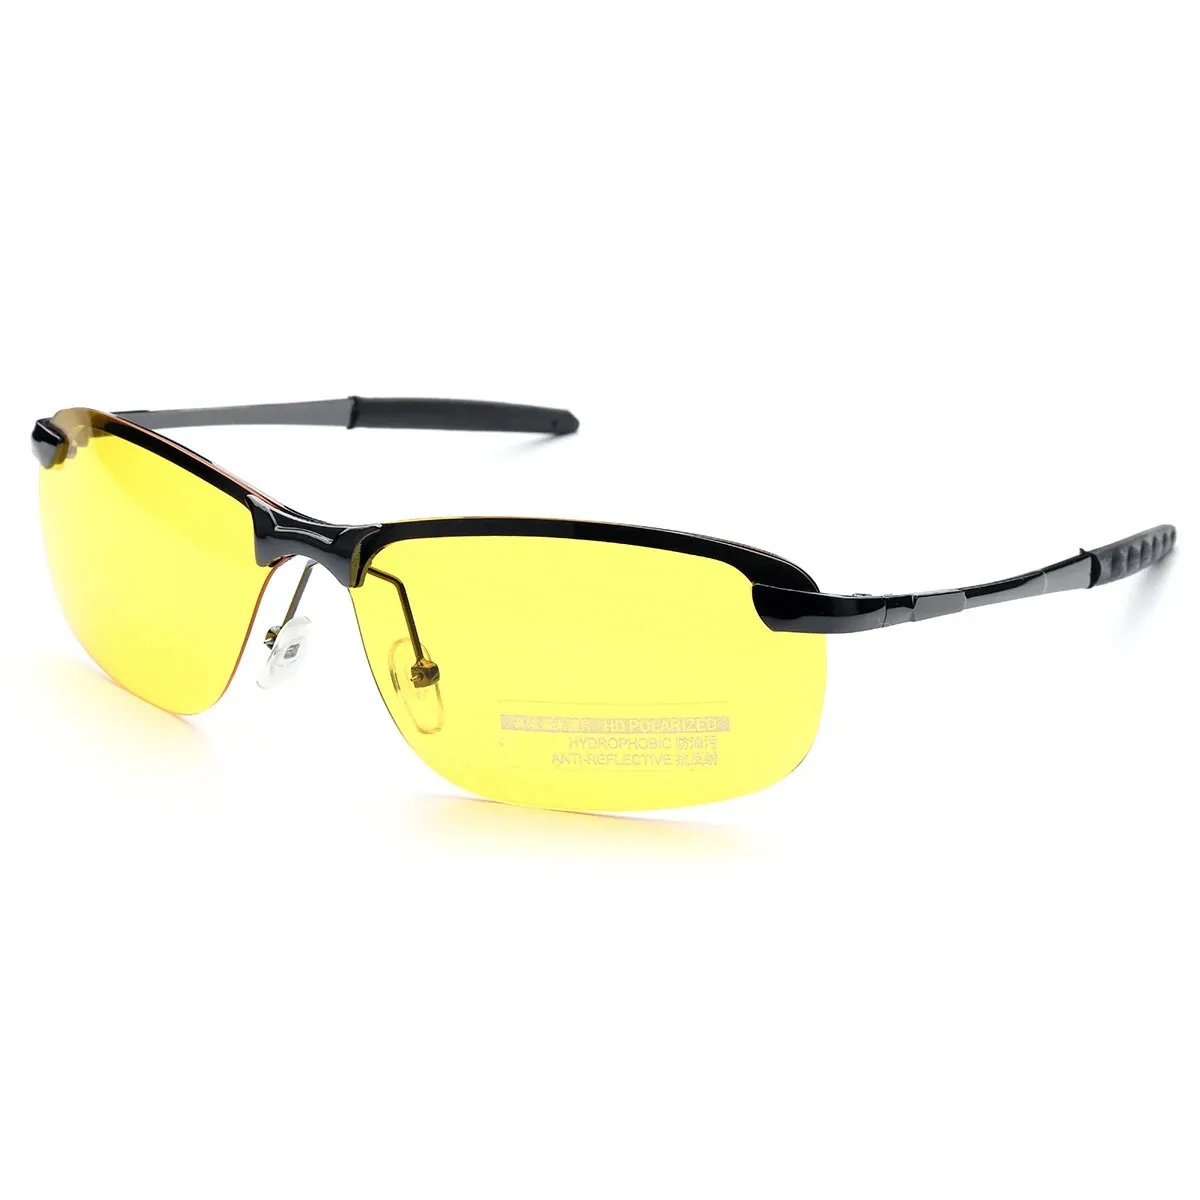 Lunettes de soleil polarisées UV400, lunettes de conduite, lunettes de Vision nocturne, jour et nuit